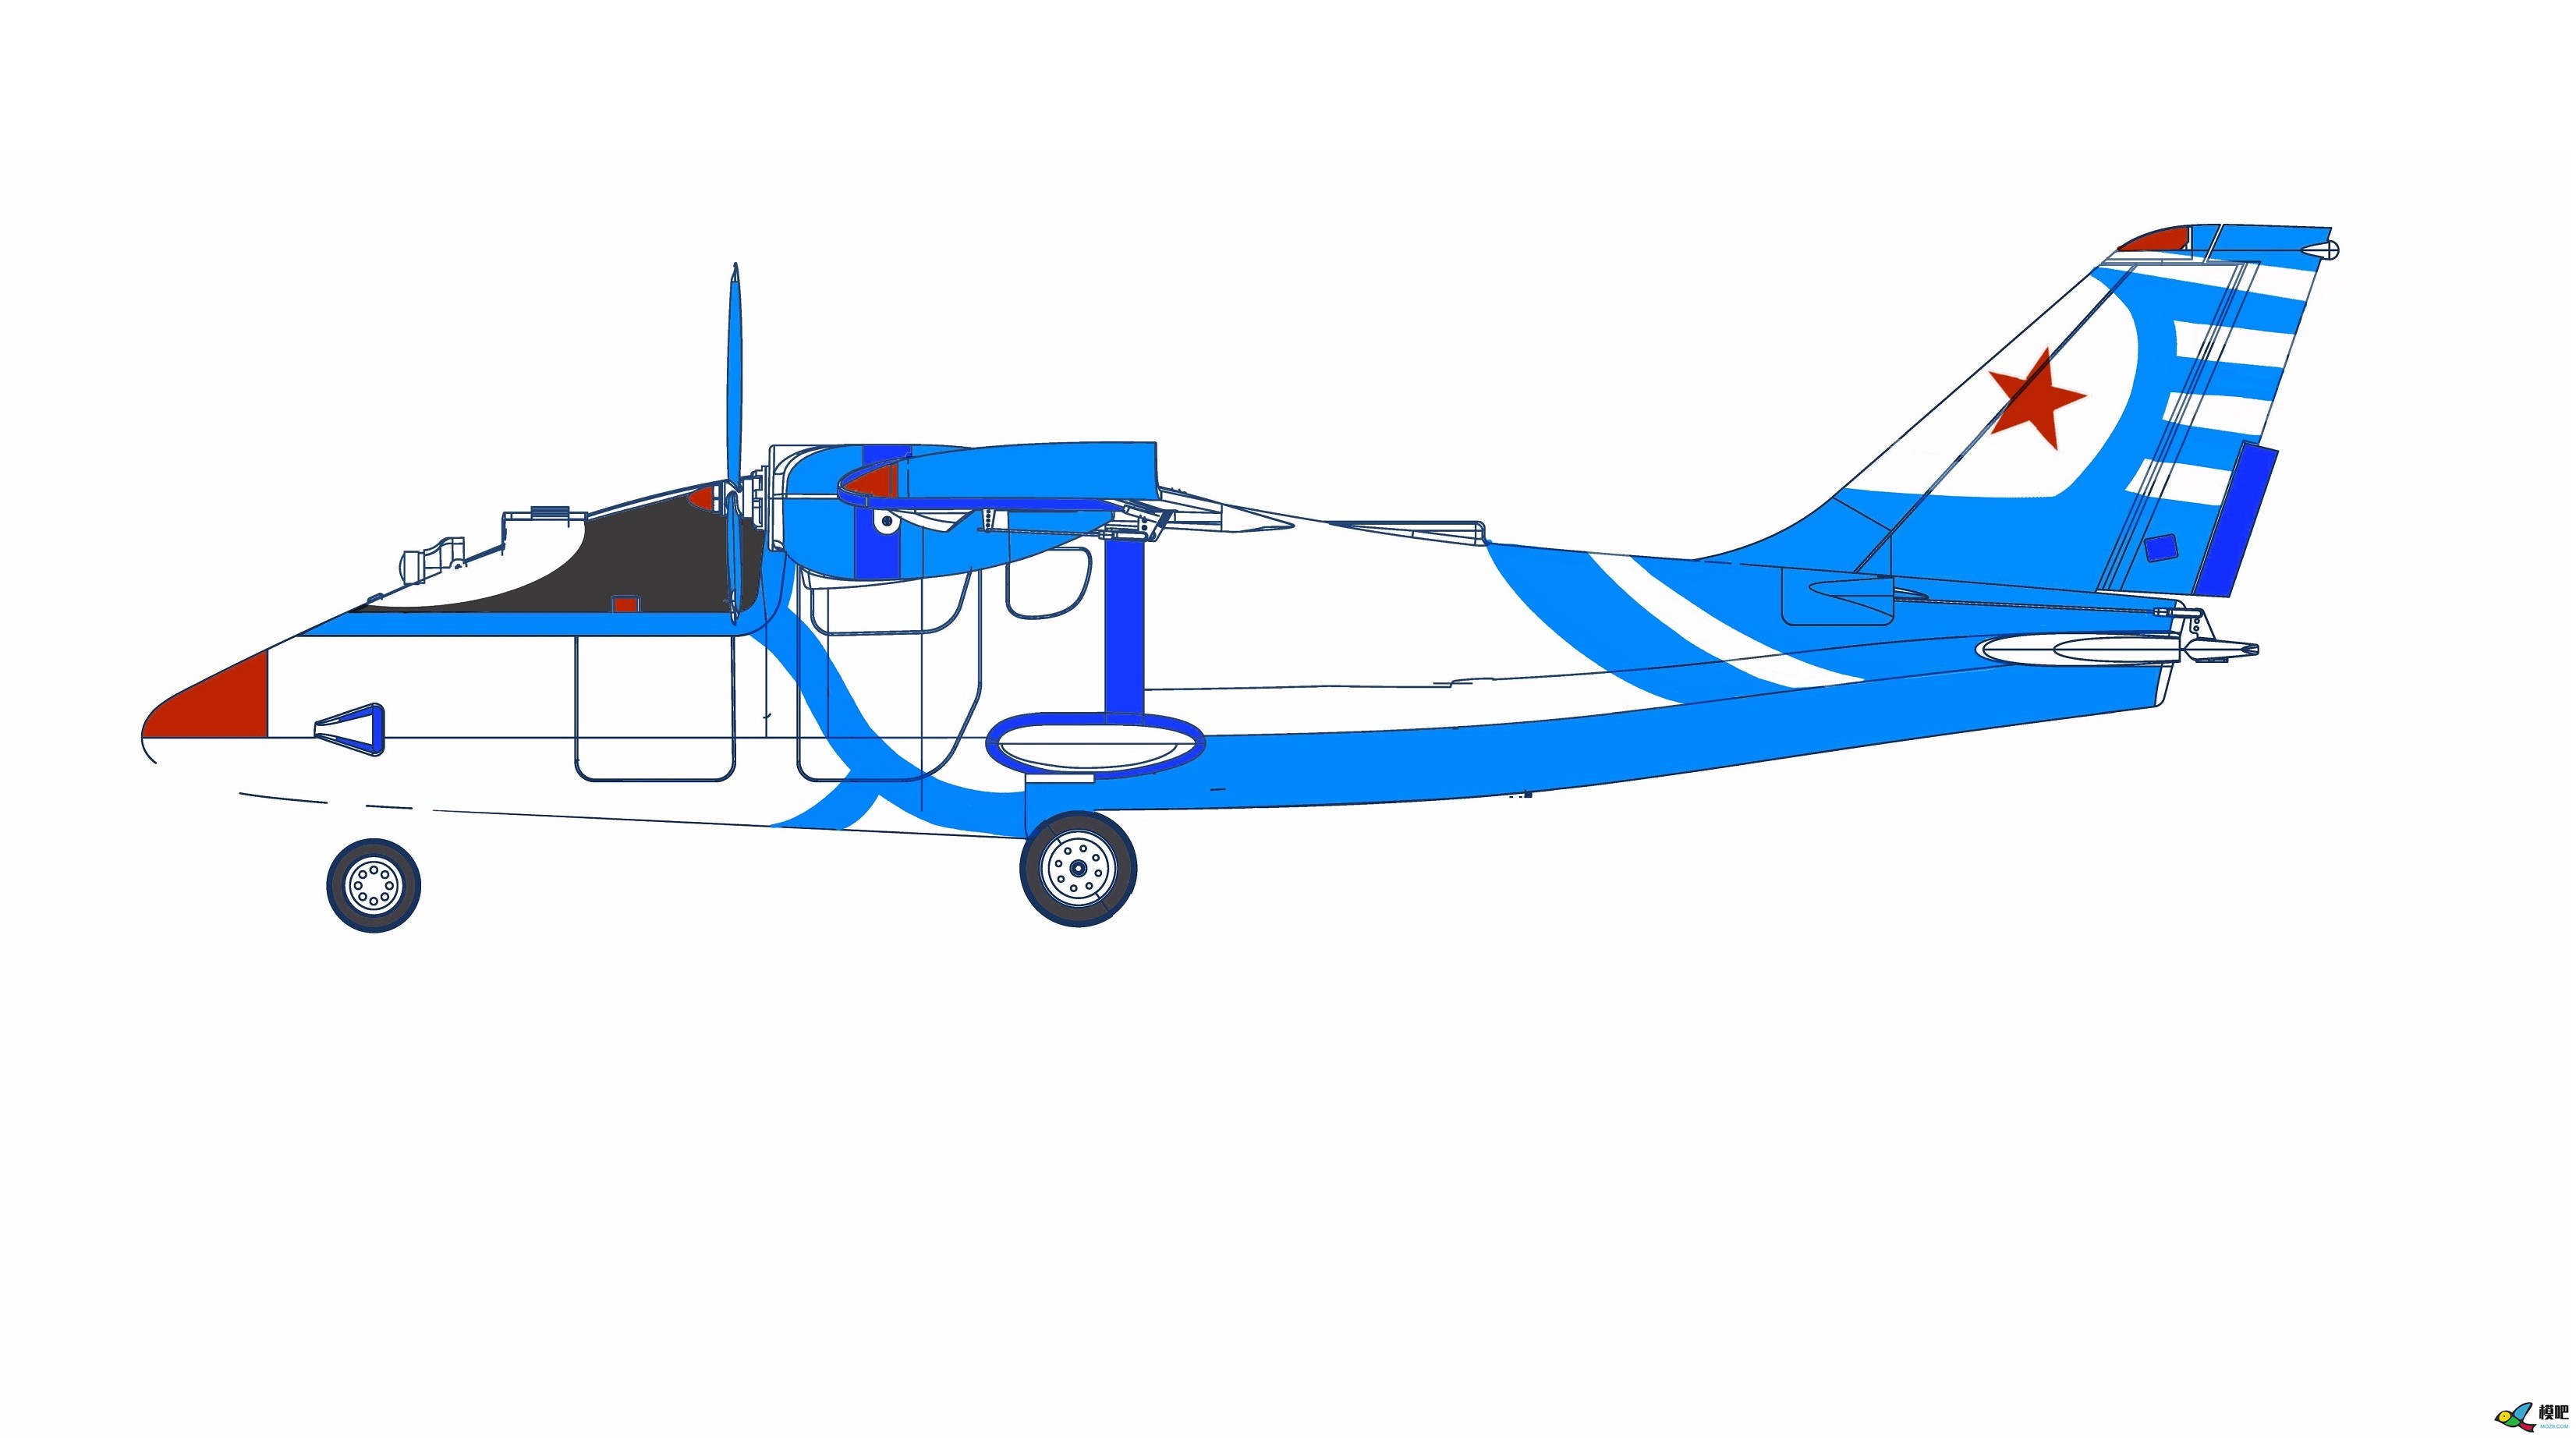 2020年第七期免费送模型：中航电Binary班纳瑞FPV飞机涂装大赛  作者:飞舞天水间 9606 